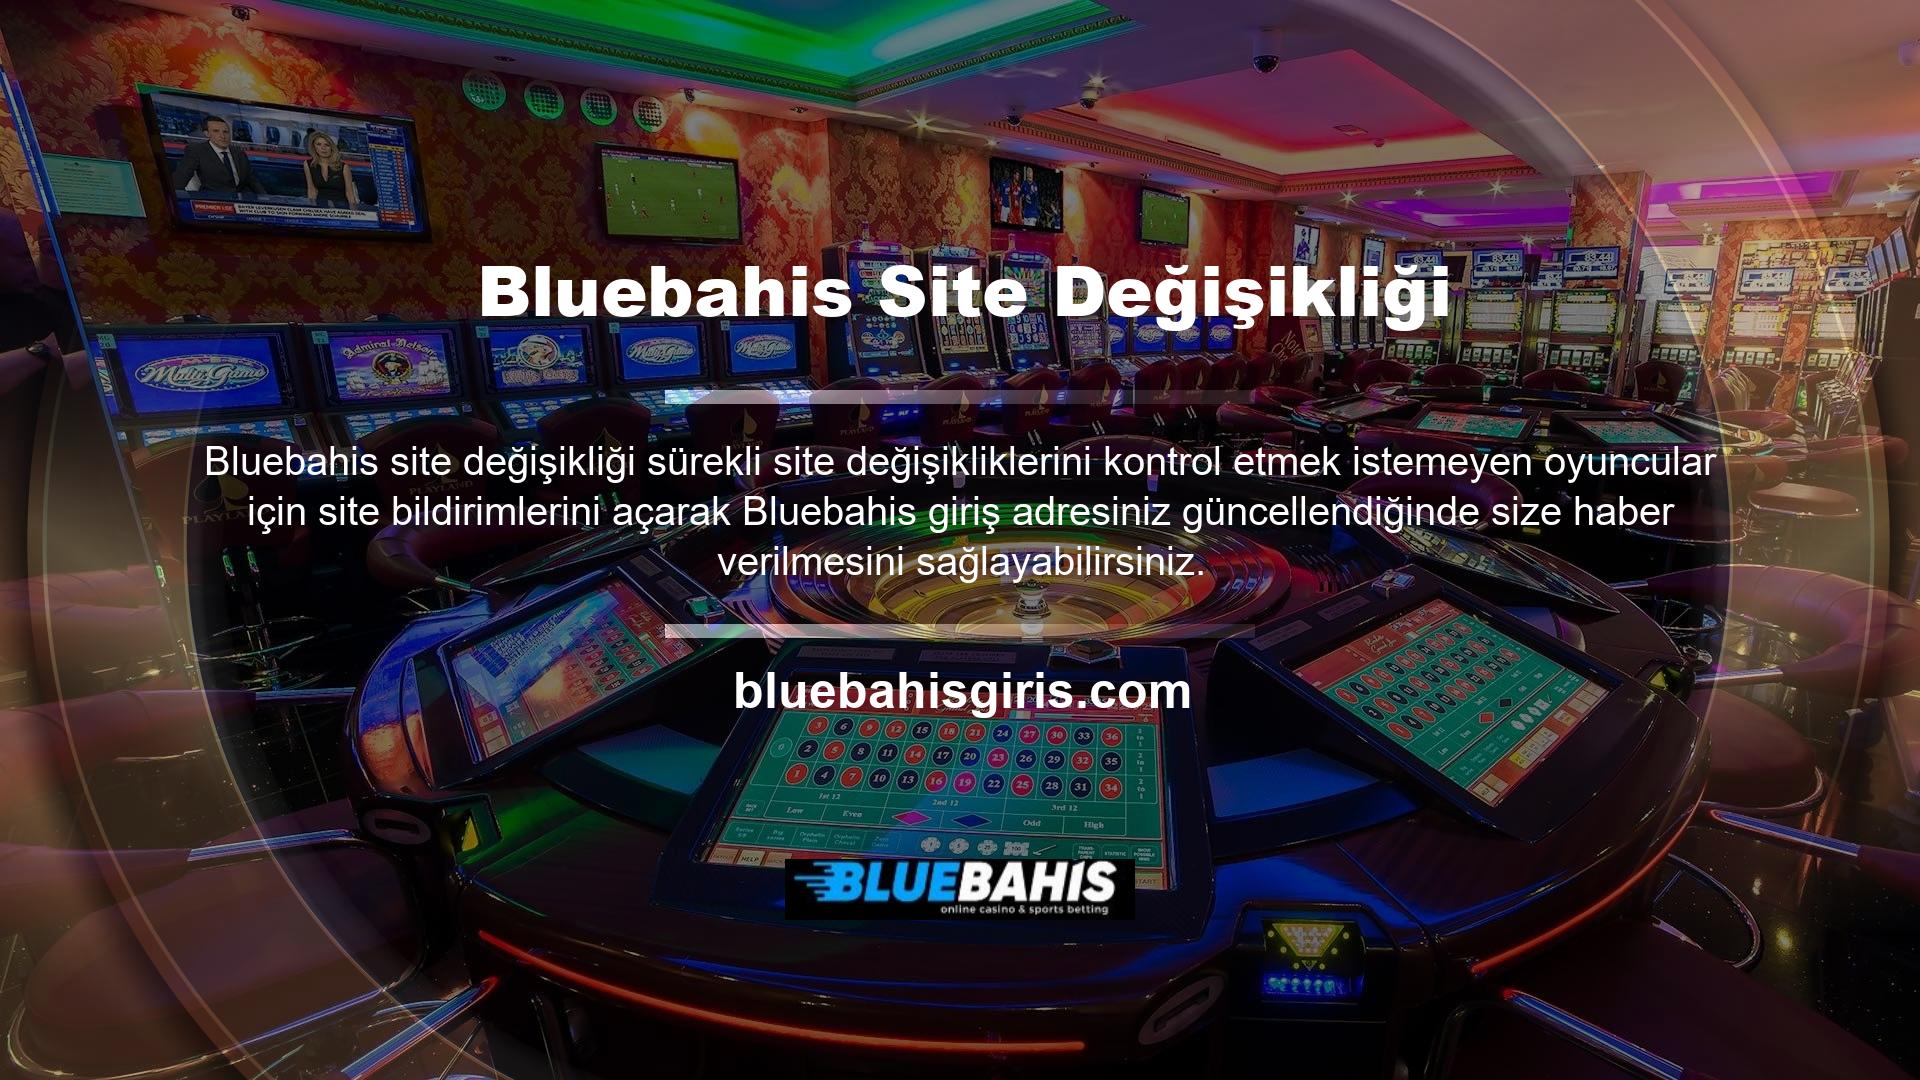 Bluebahis online oyun sitesine üye olmak veya bu sitede oyun oynamak için bir VPN veya benzeri kullanmanız gerekecek